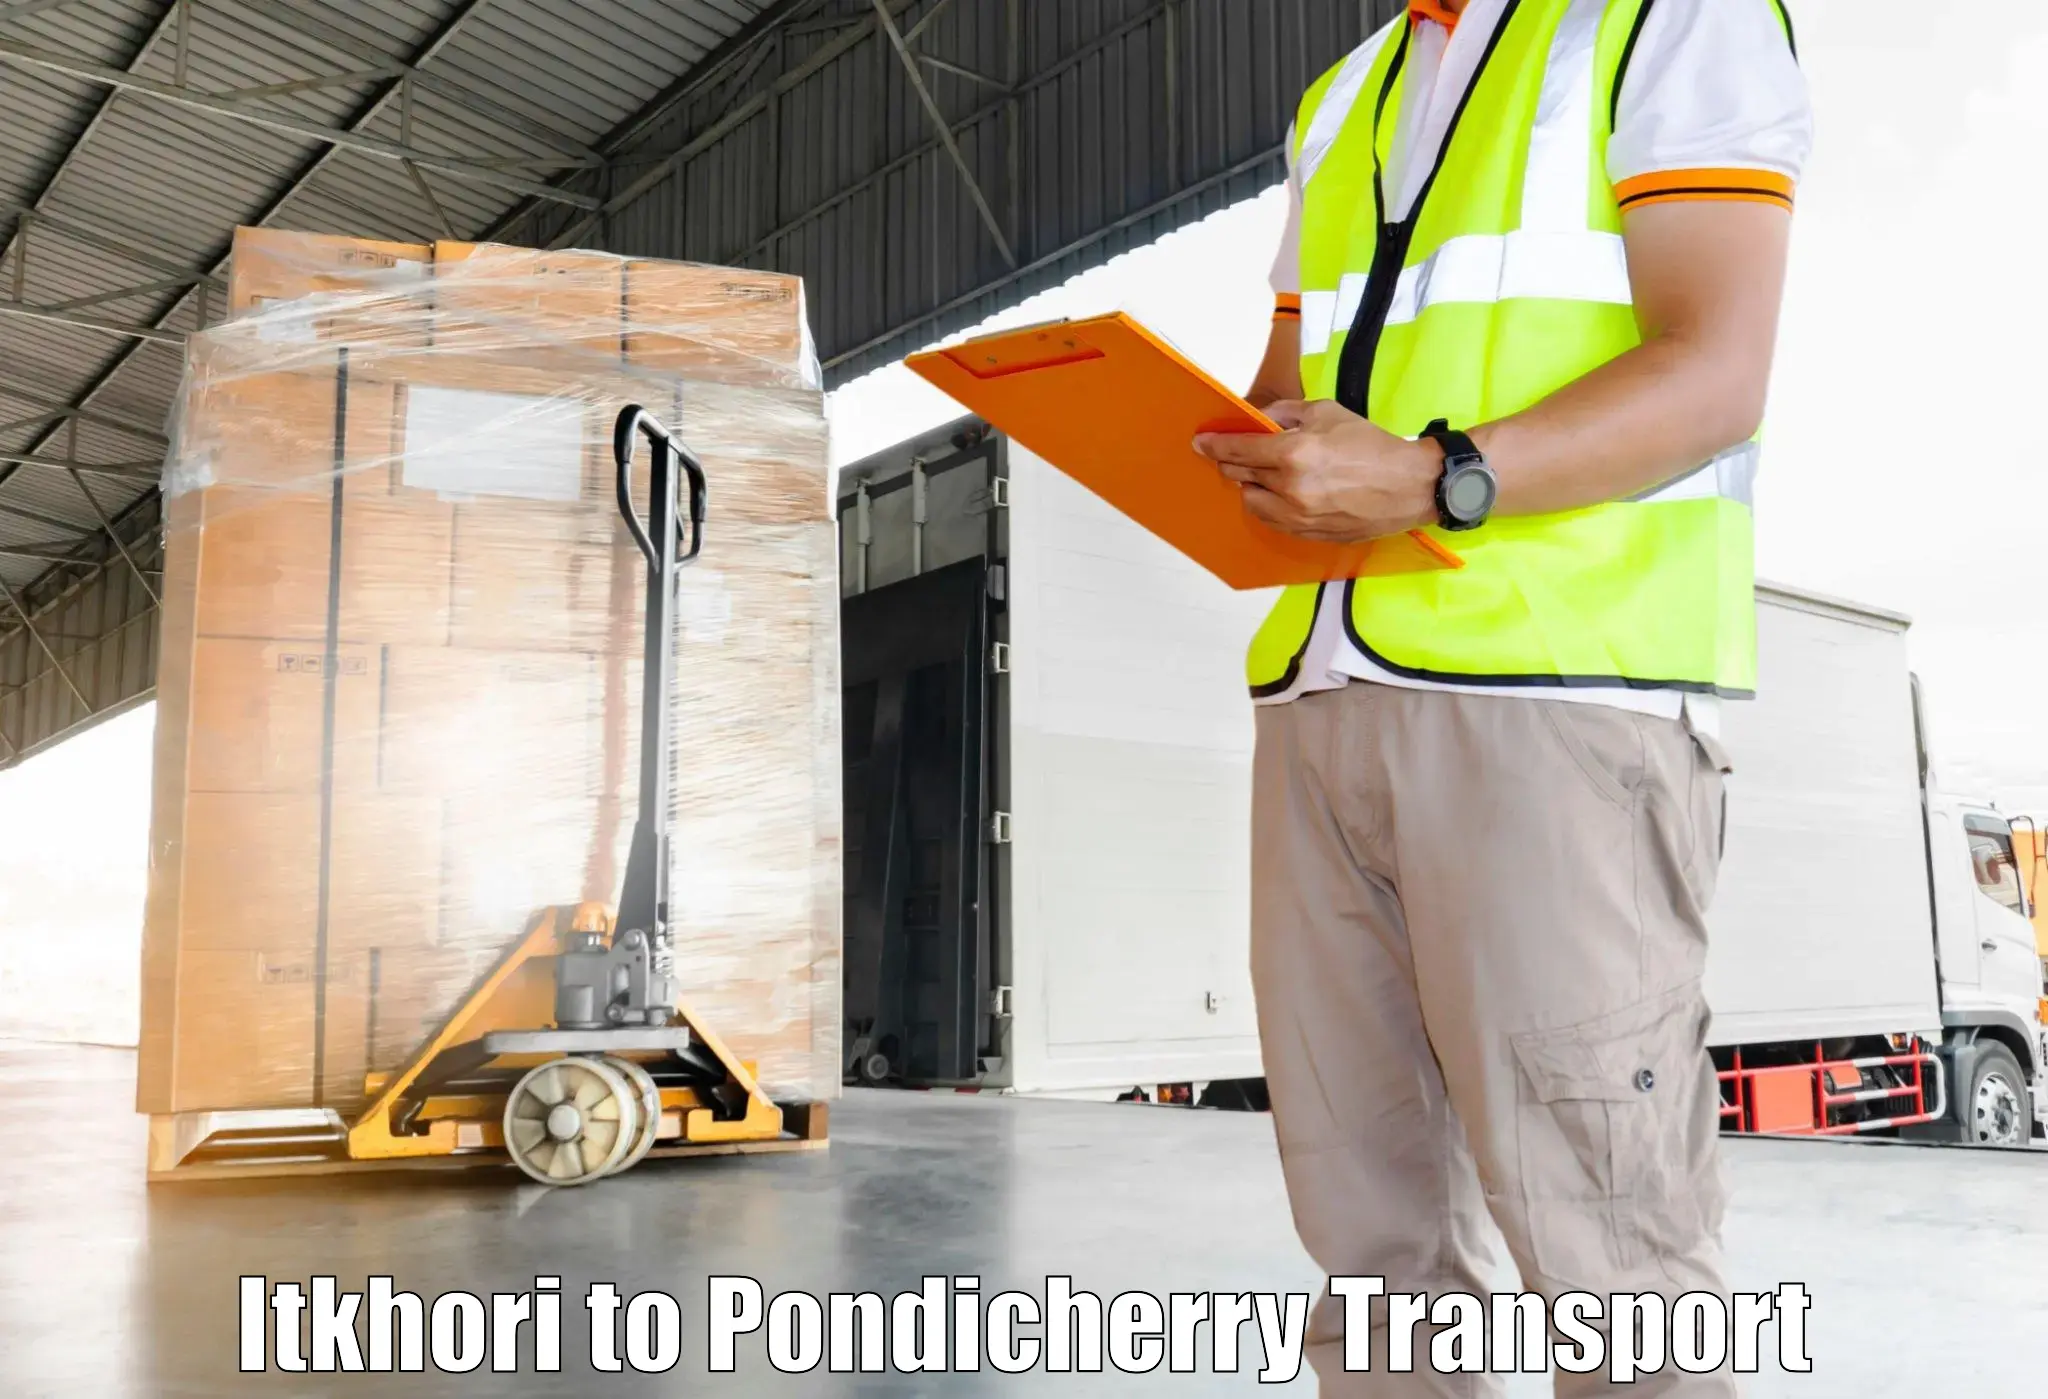 Two wheeler parcel service Itkhori to Pondicherry